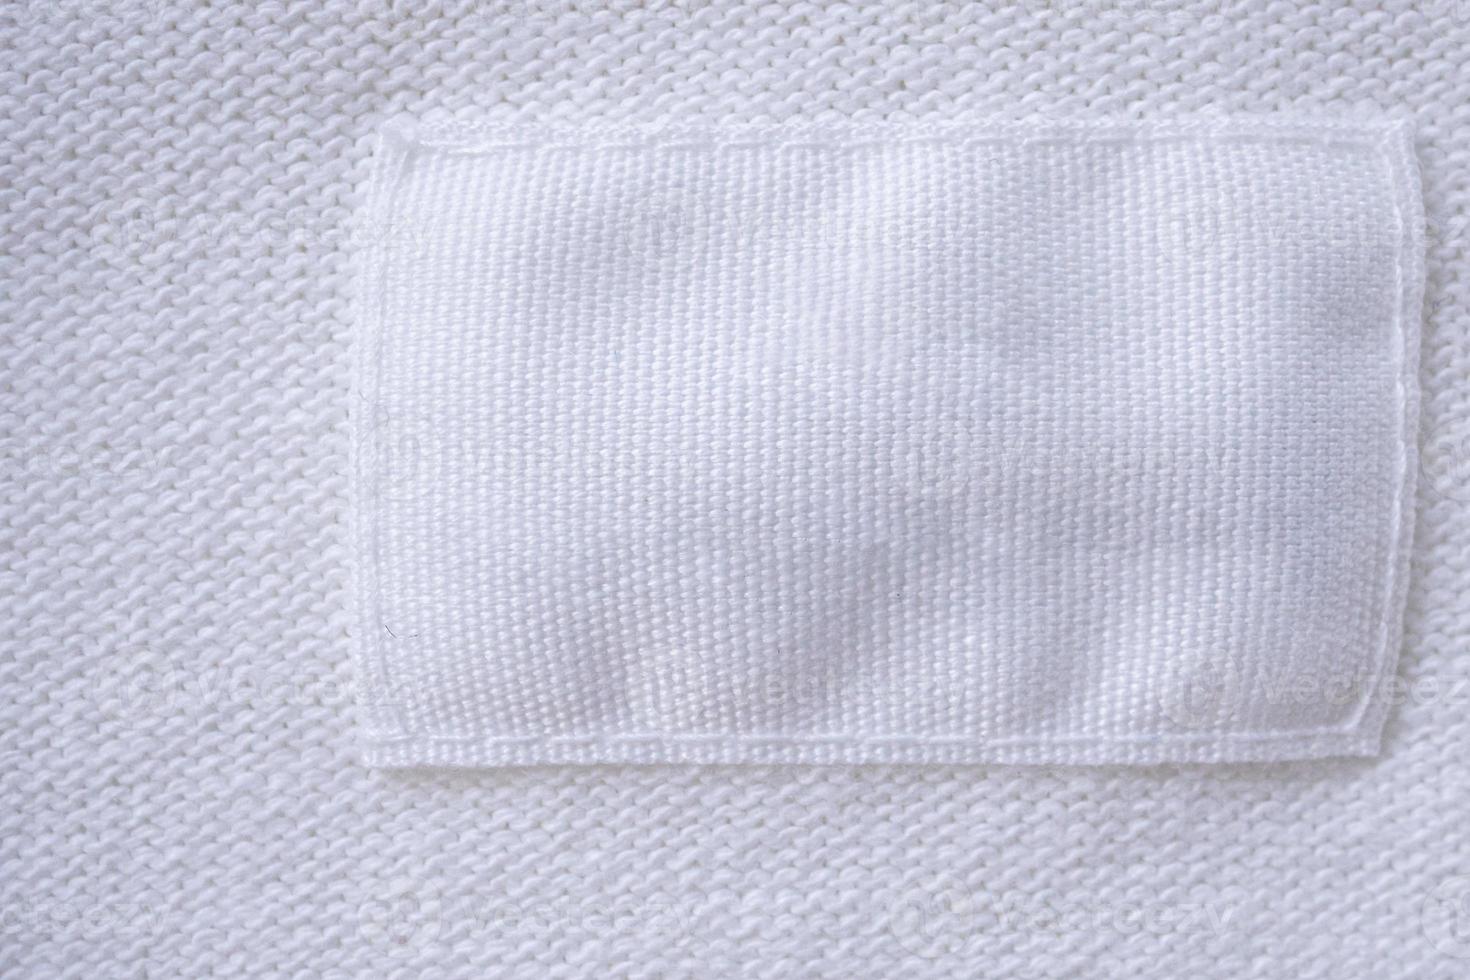 etiqueta de ropa blanca en blanco sobre fondo de camisa nueva foto